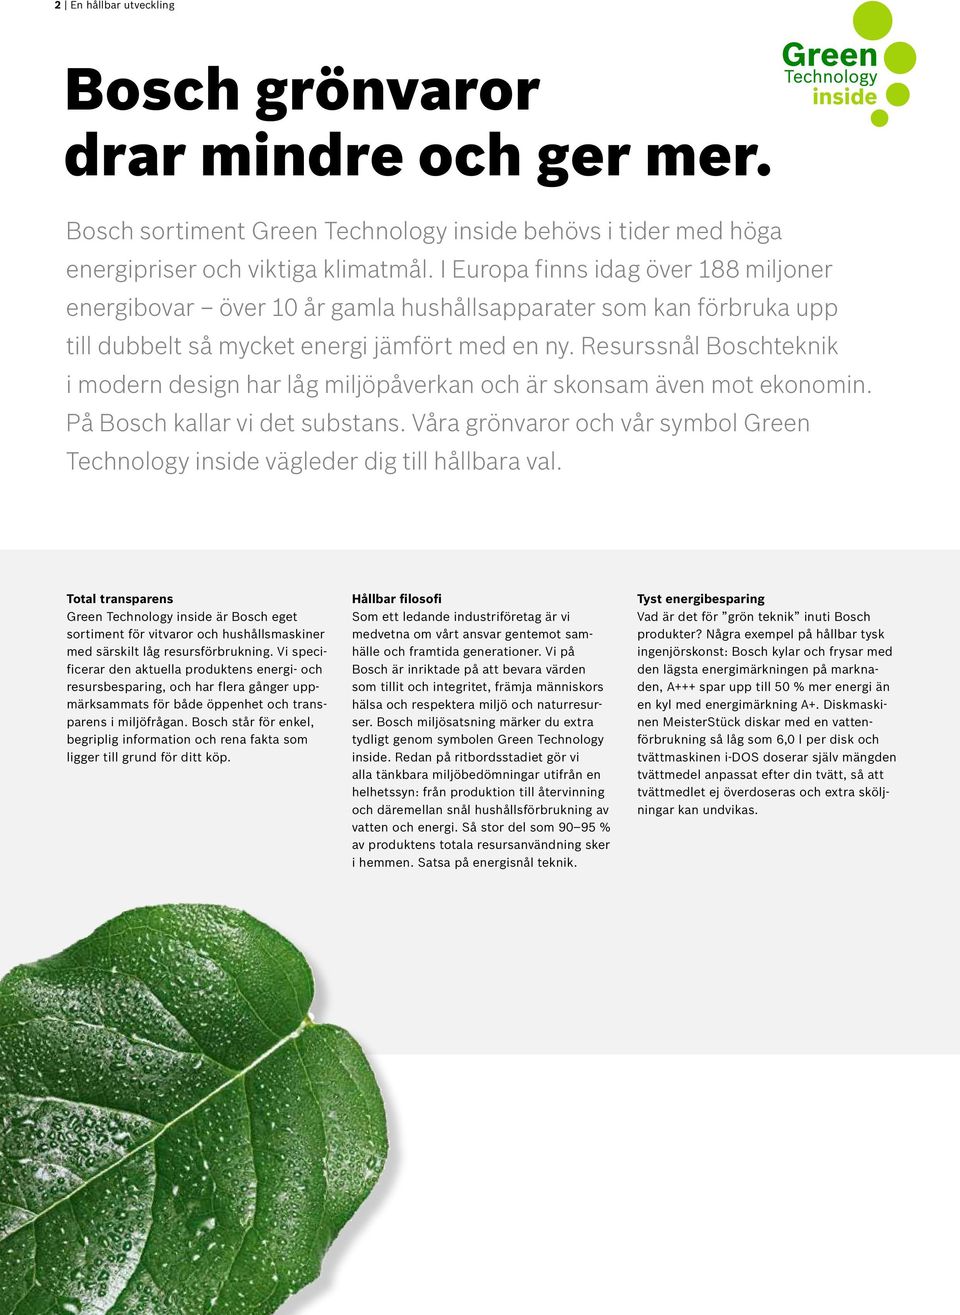 Resurssnål Boschteknik i modern design har låg miljöpåverkan och är skonsam även mot ekonomin. På Bosch kallar vi det substans.